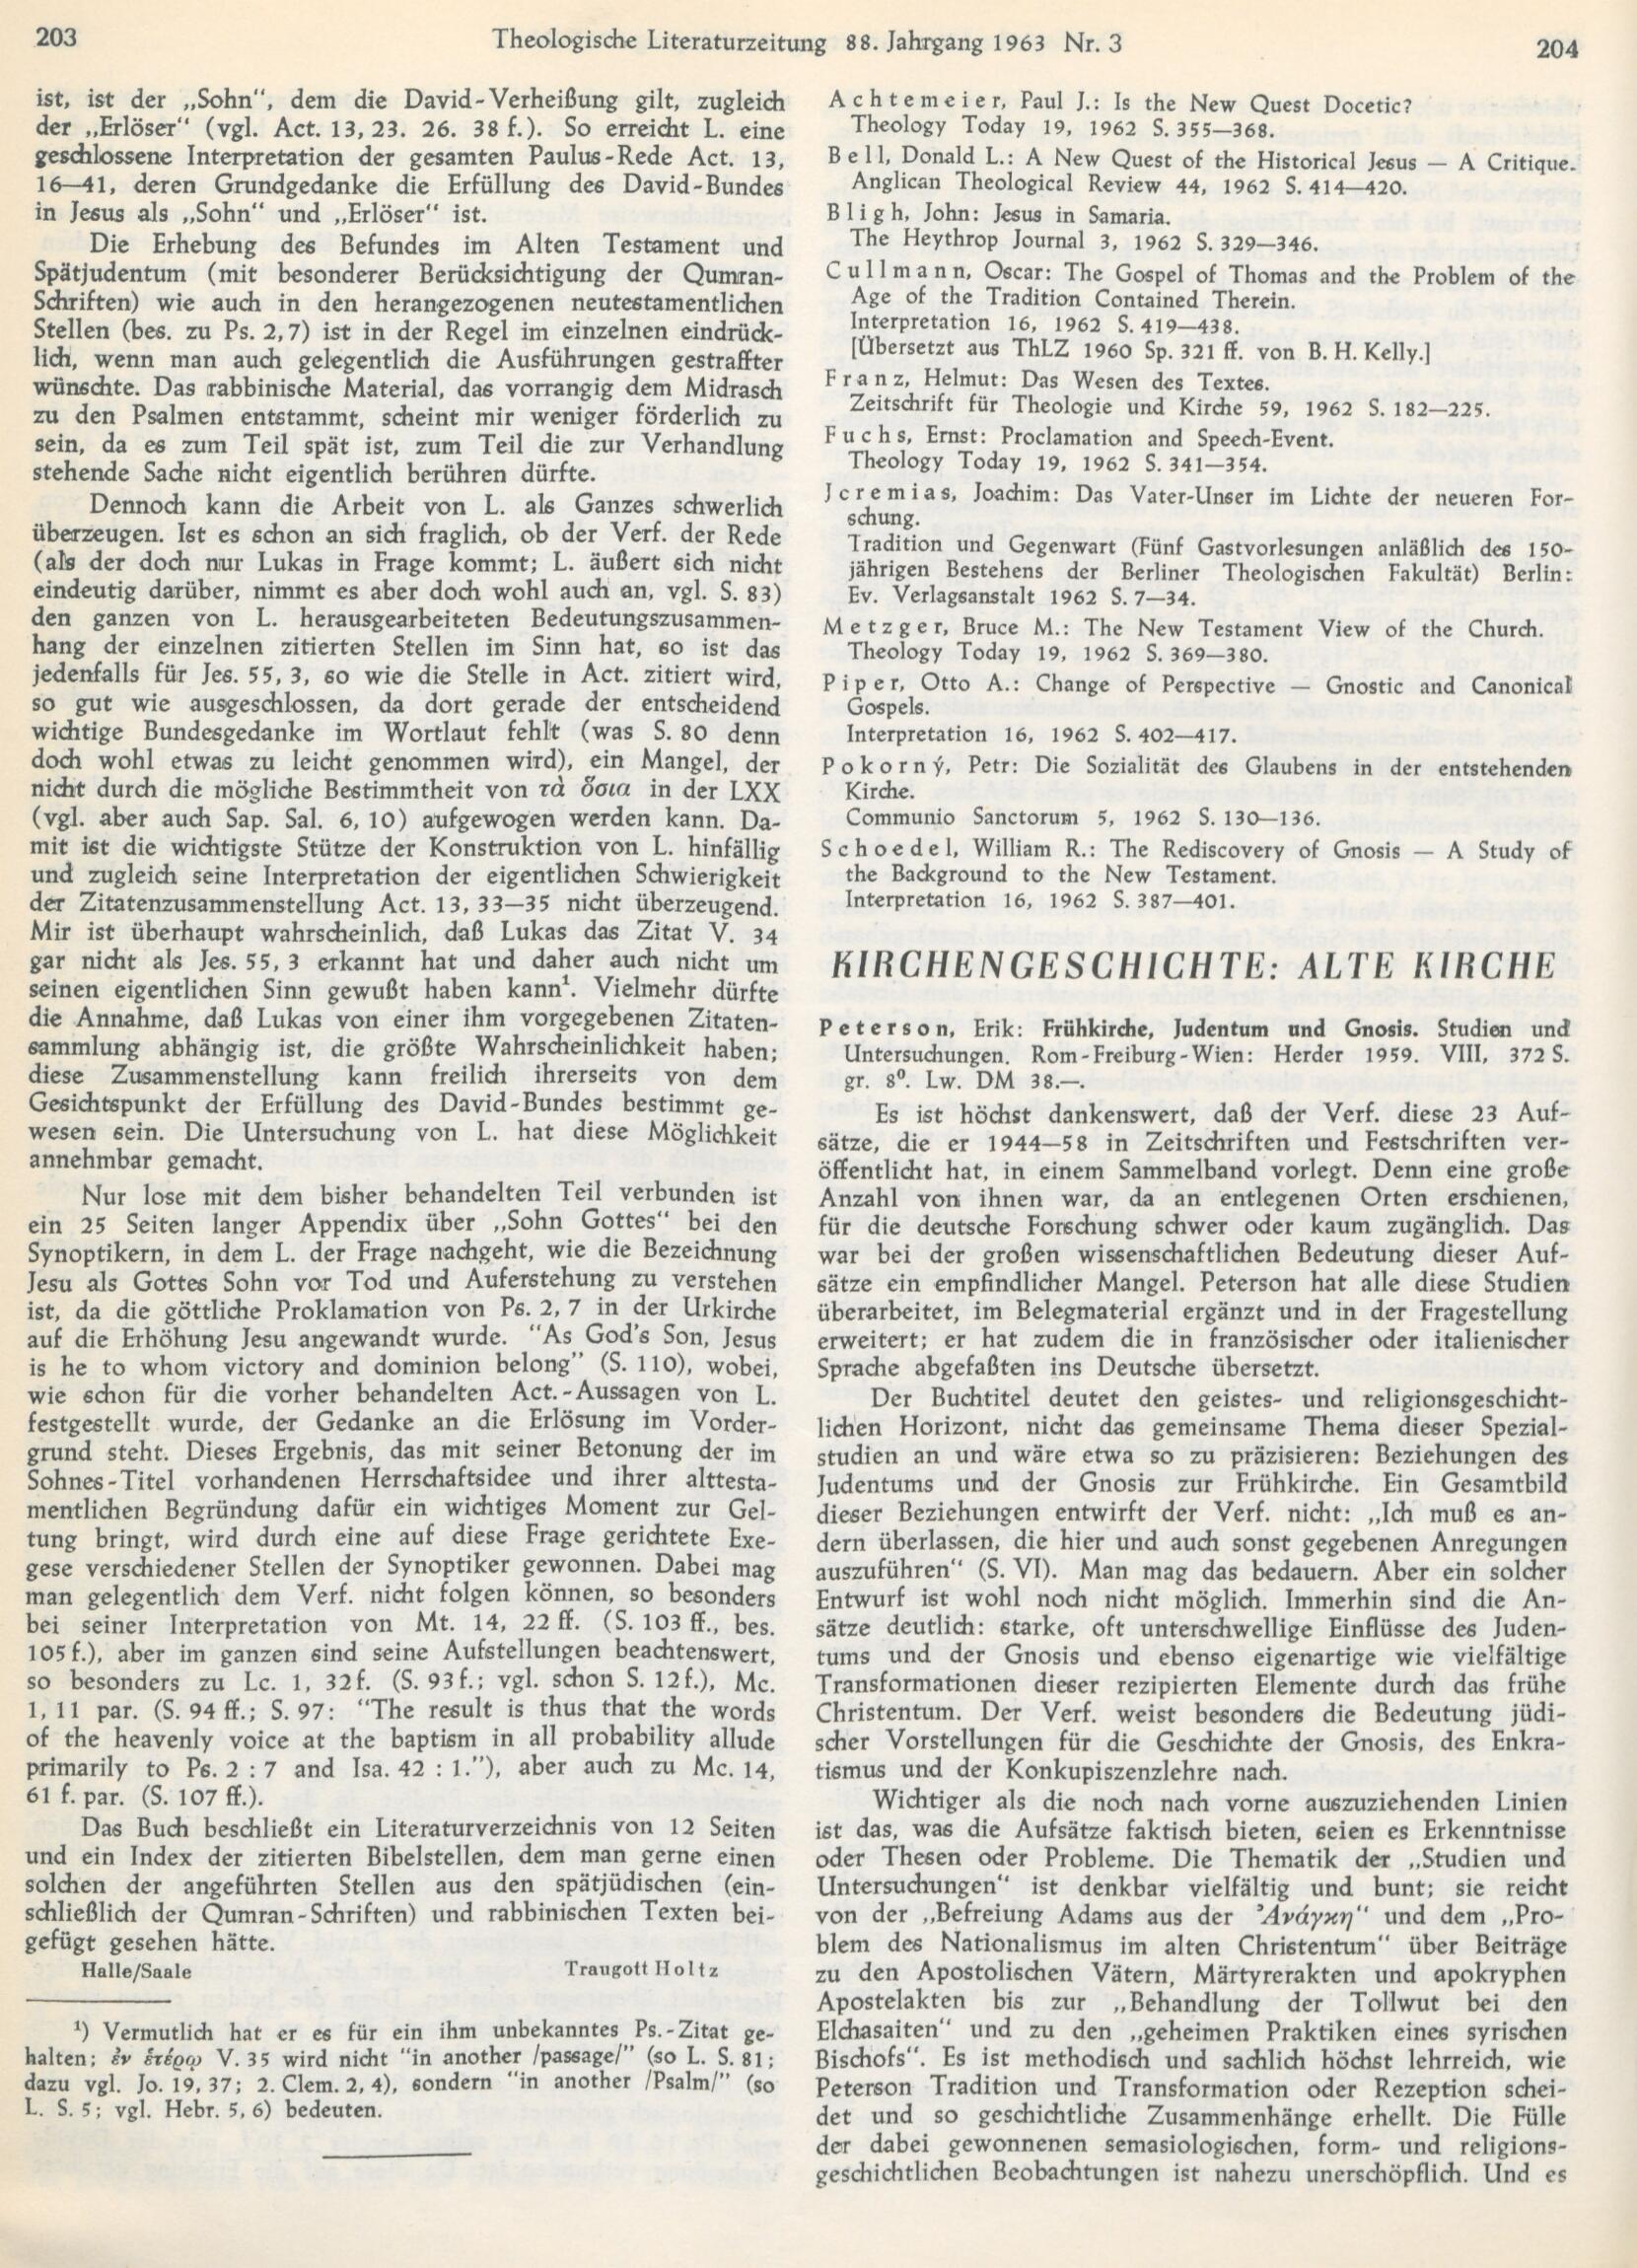 Theologische Literaturzeitung Monatsschrift für das gesamte Gebiet der Theologie und Religionswissenschaft 88 1963